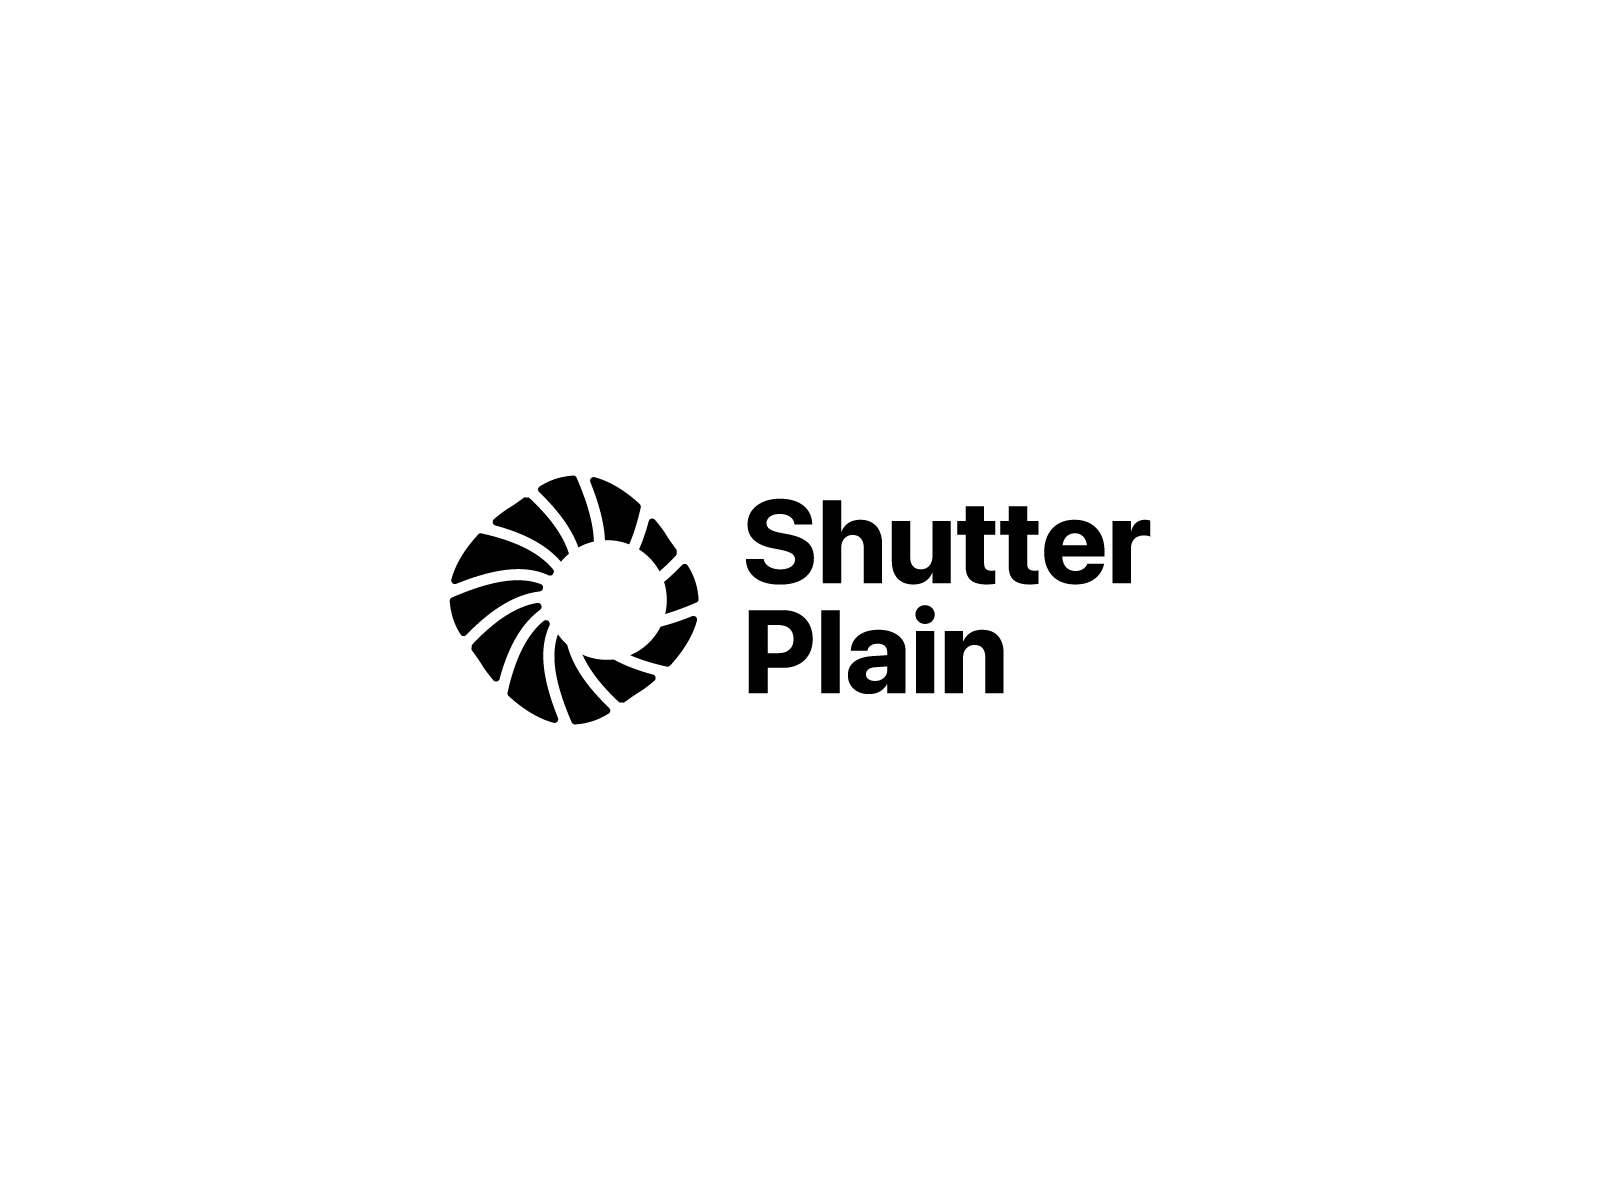 Shutter Plain Logo by Artyom Anokhin on Dribbble